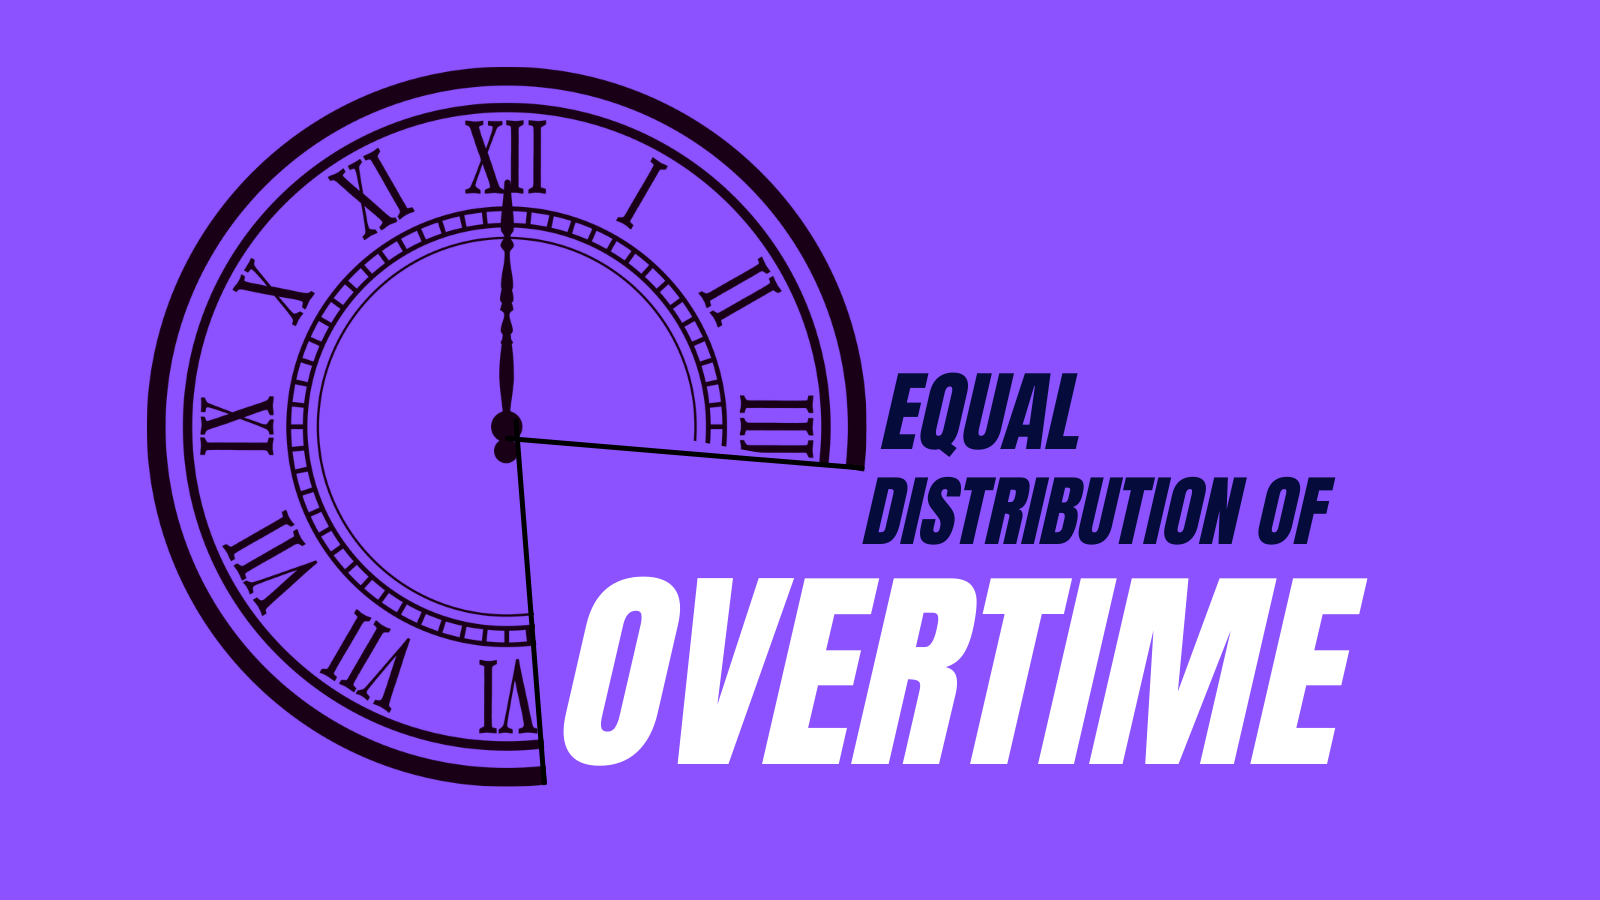 Overtime-equalization